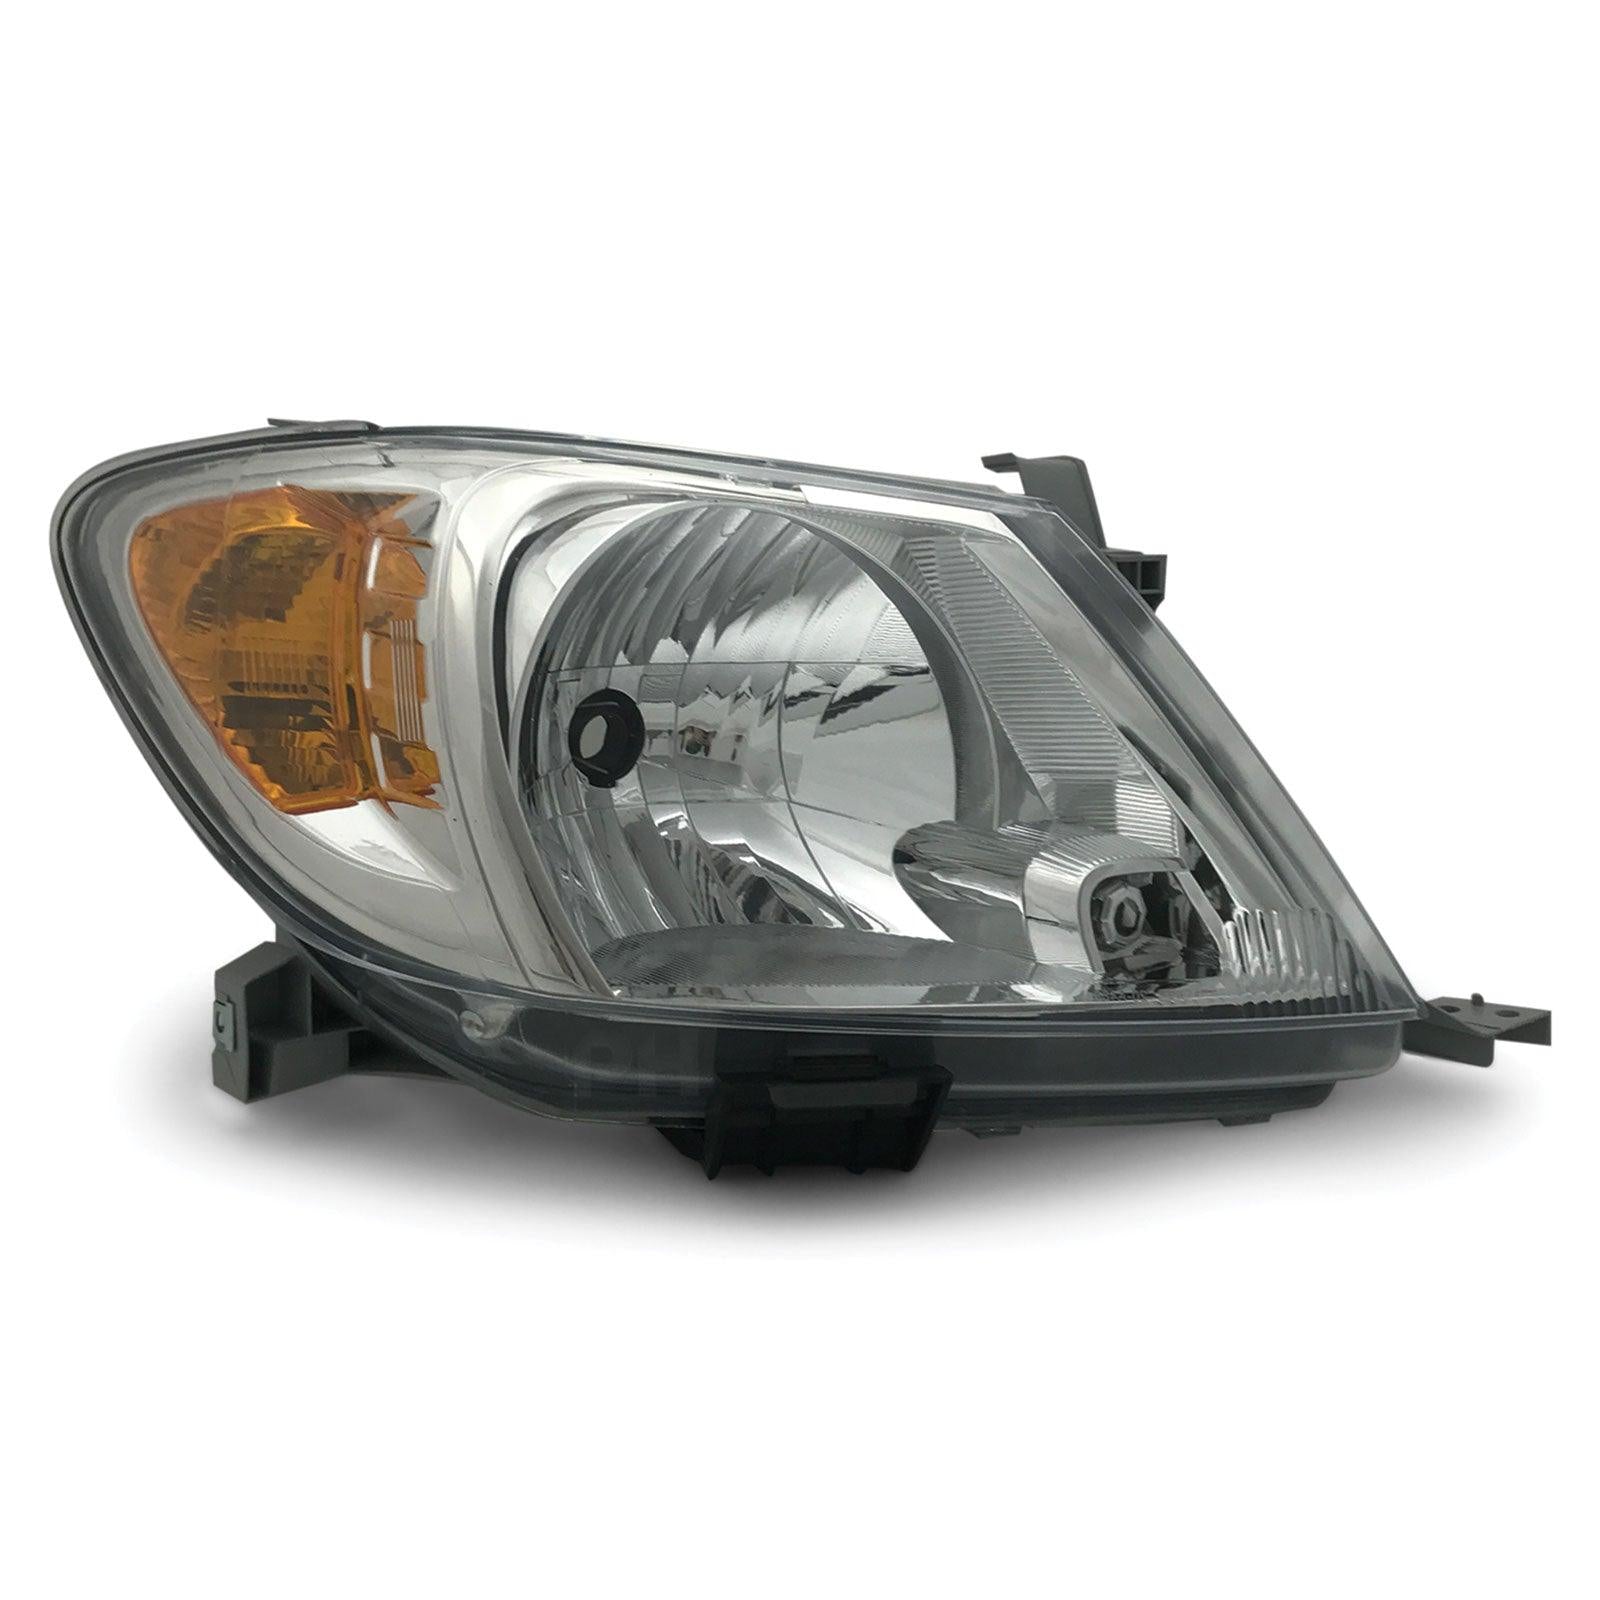 Headlights PAIR Amber ADR Fits Toyota Hilux SR SR5 Workmate GGN KUN TGN 05 - 08 - 4X4OC™